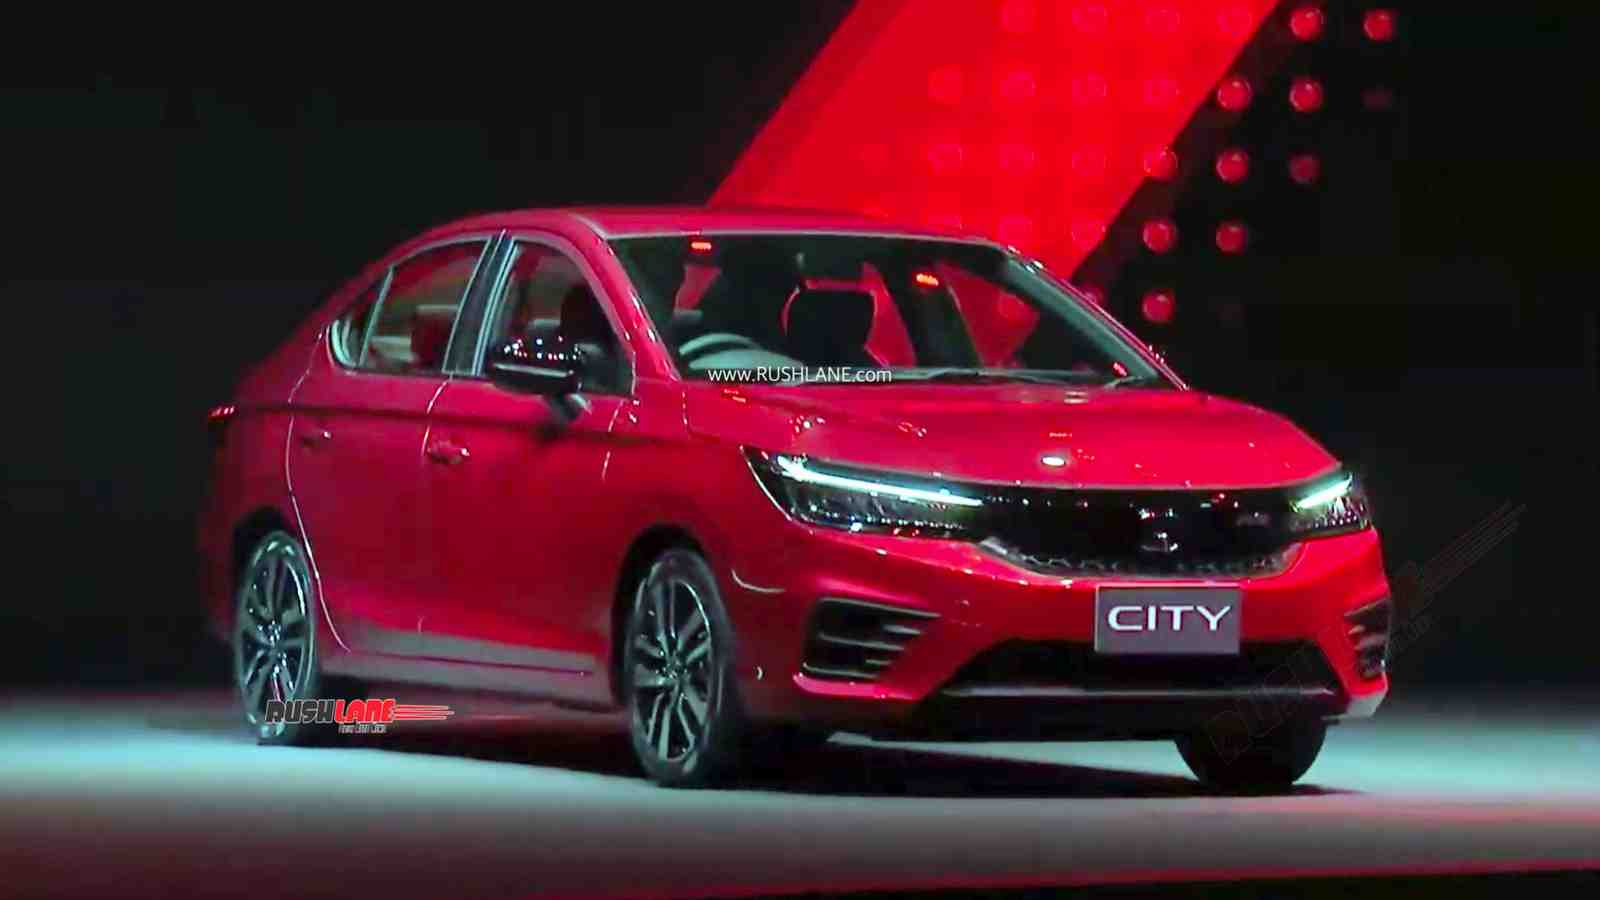 Honda City 2020 New Model Price In India